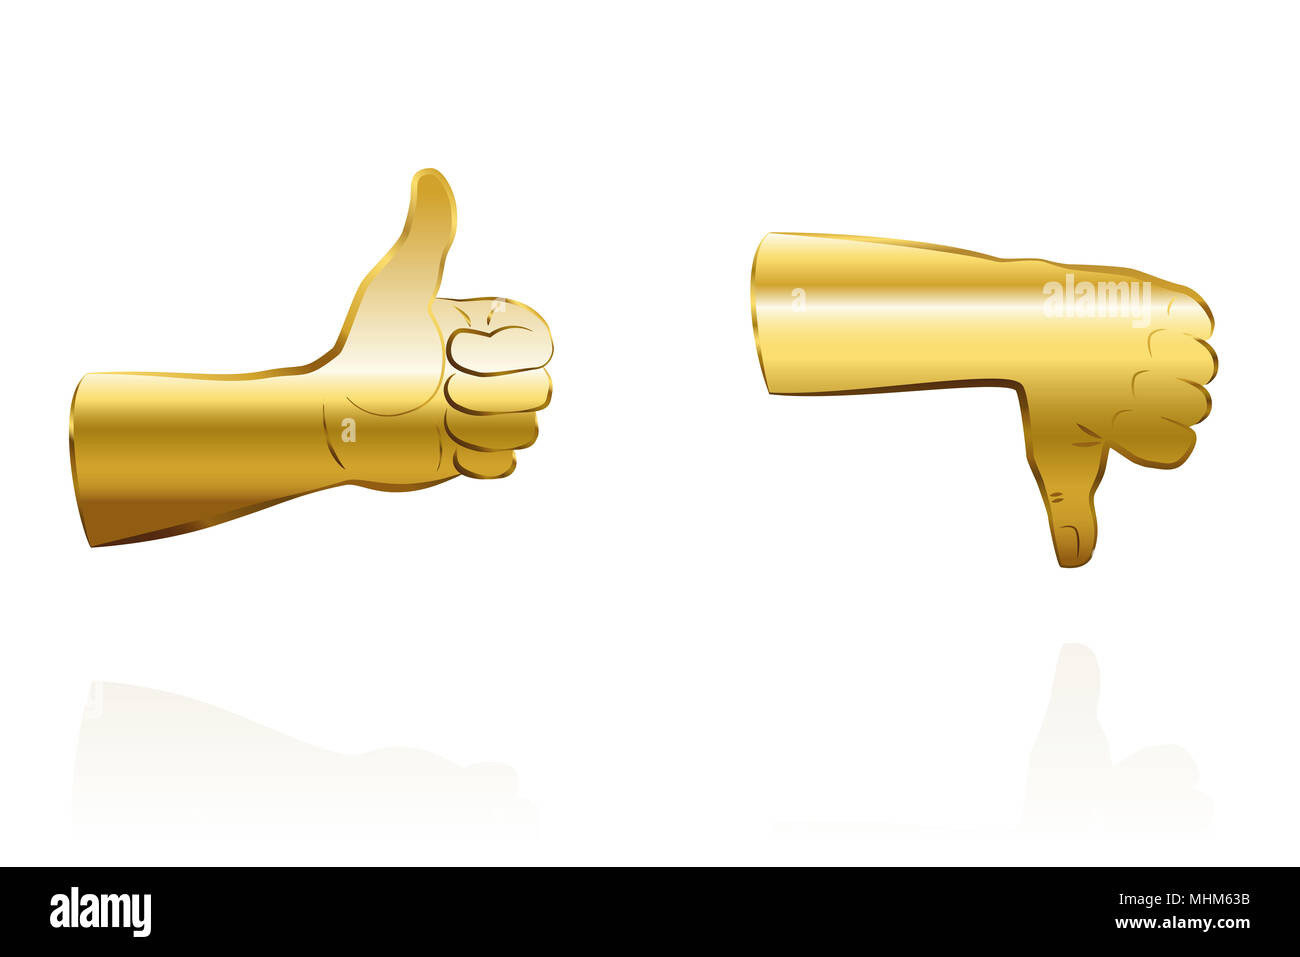 Golden Thumbs up pour l'accord, et golden Thumbs down pour désaccord - illustration sur fond blanc. Banque D'Images